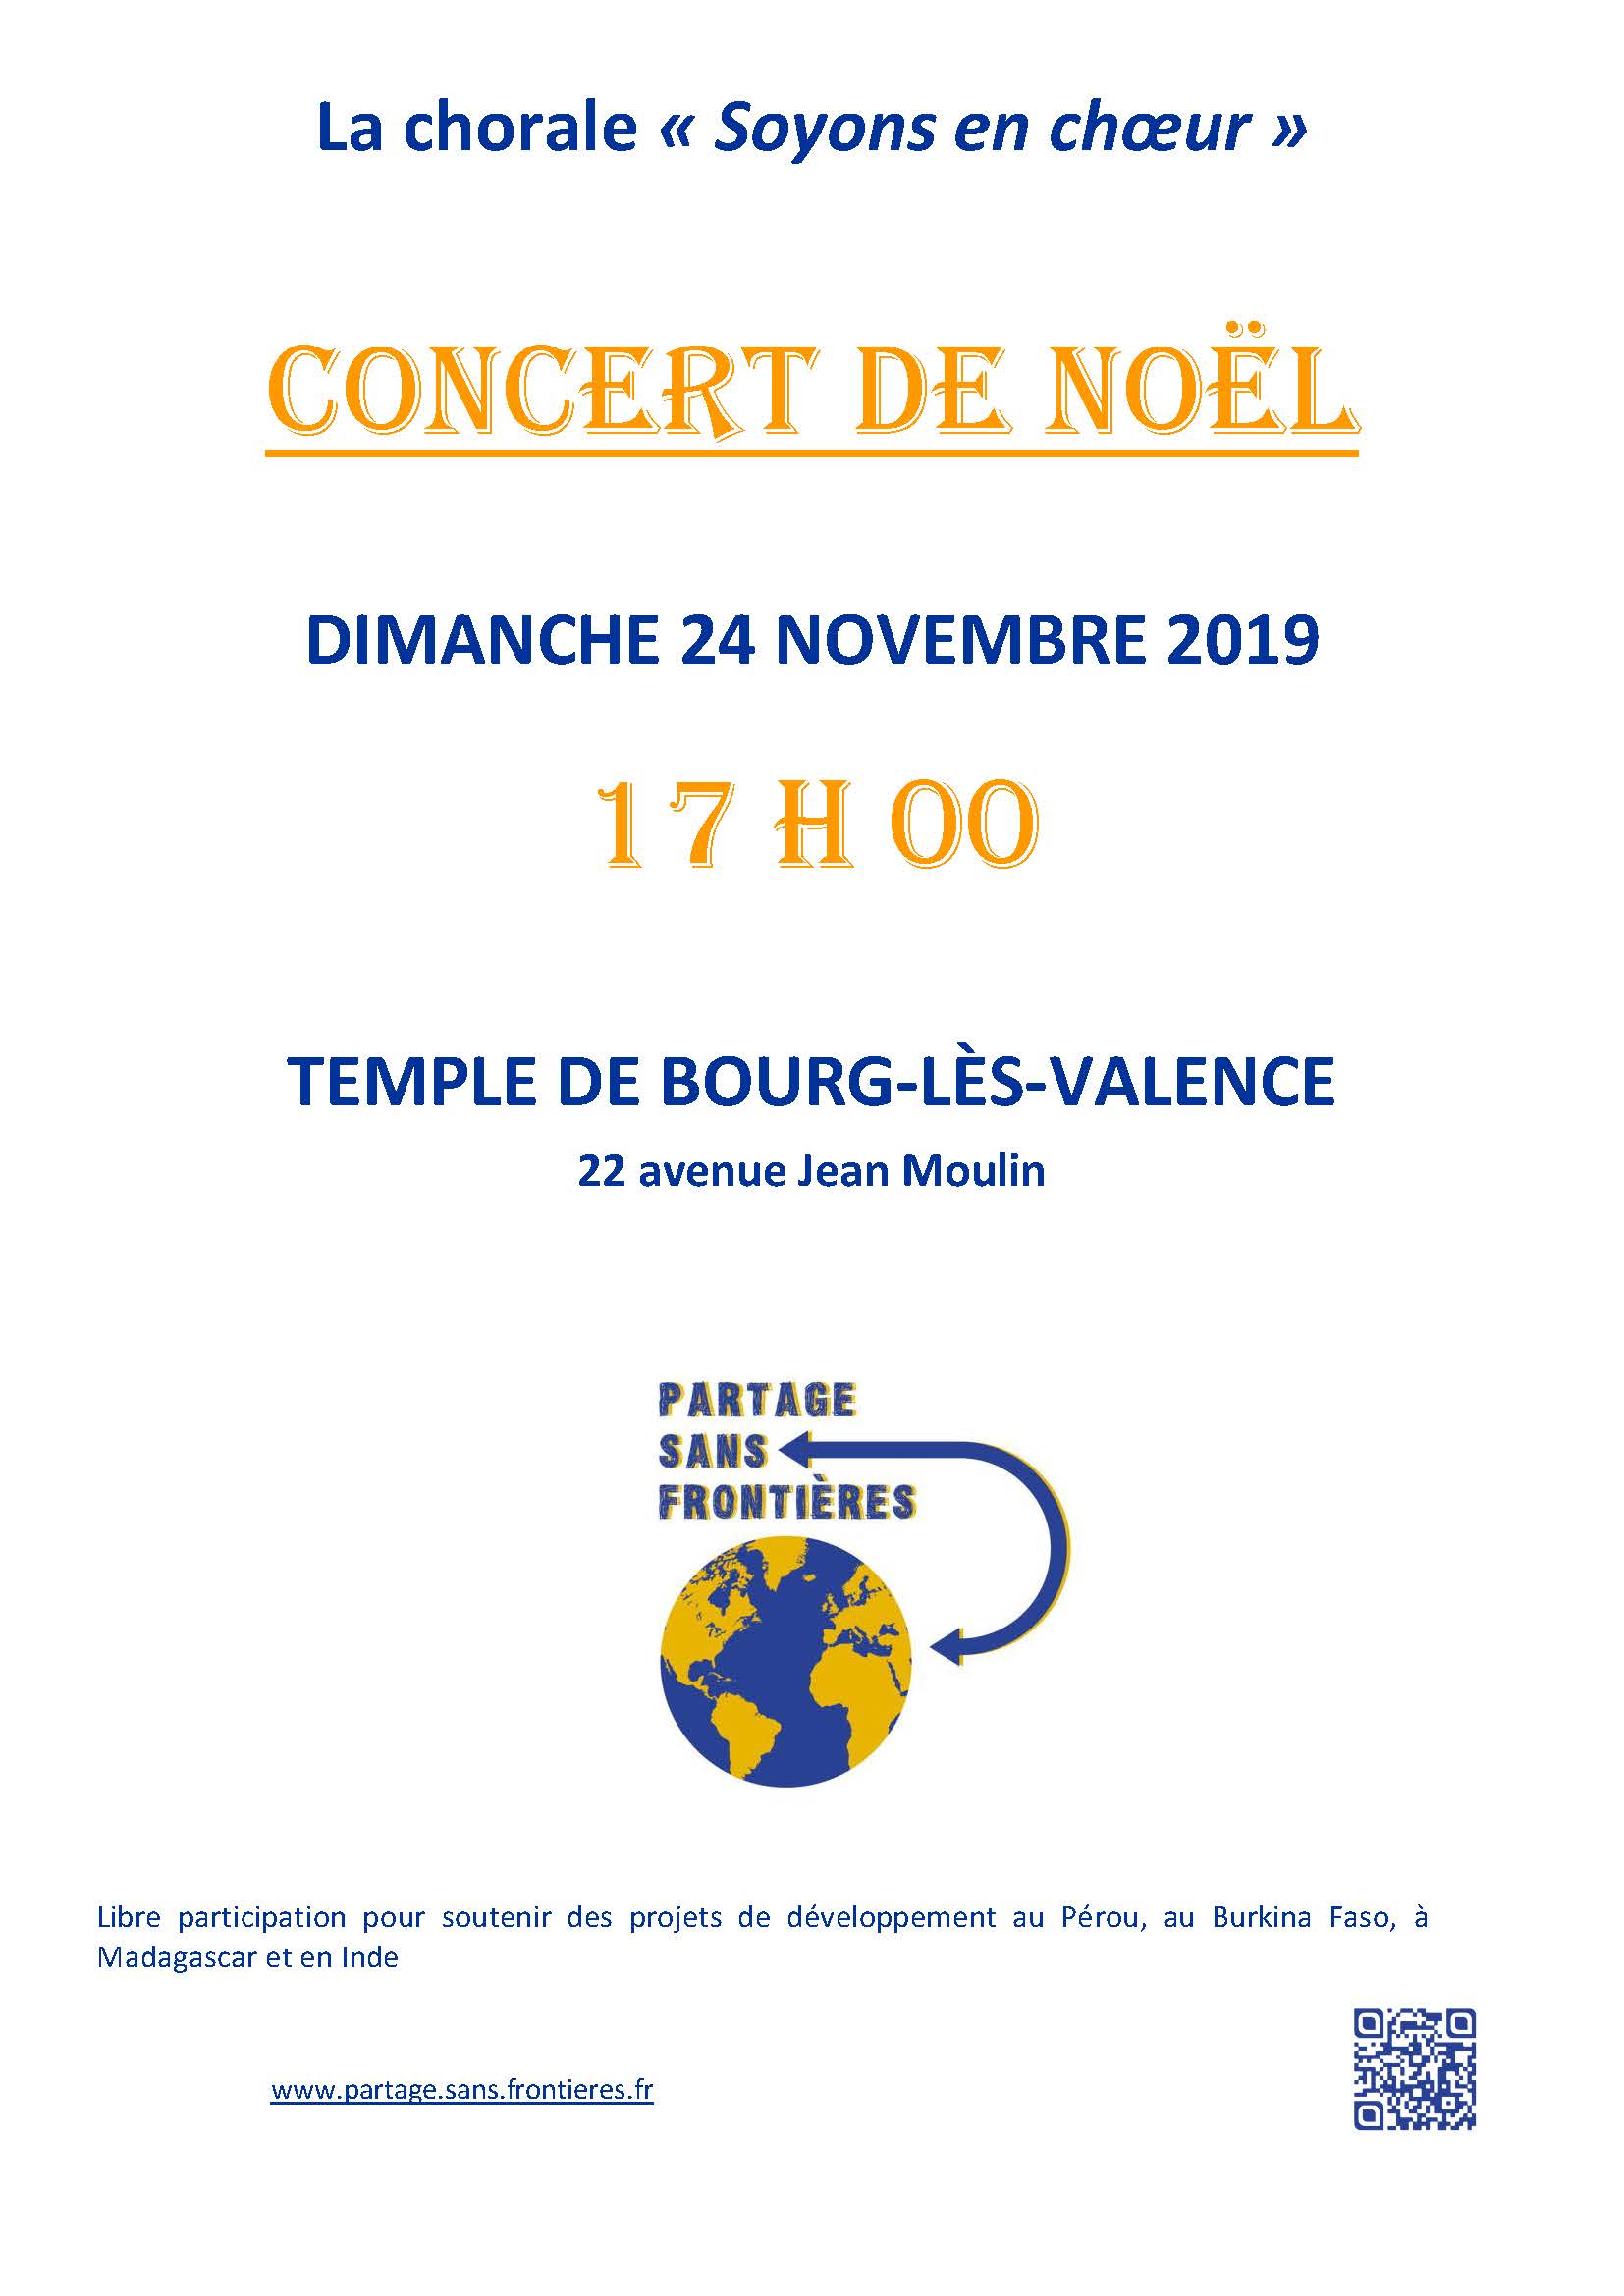 Concert choral le 24 novembre 2019 à Bourg-lès-Valence